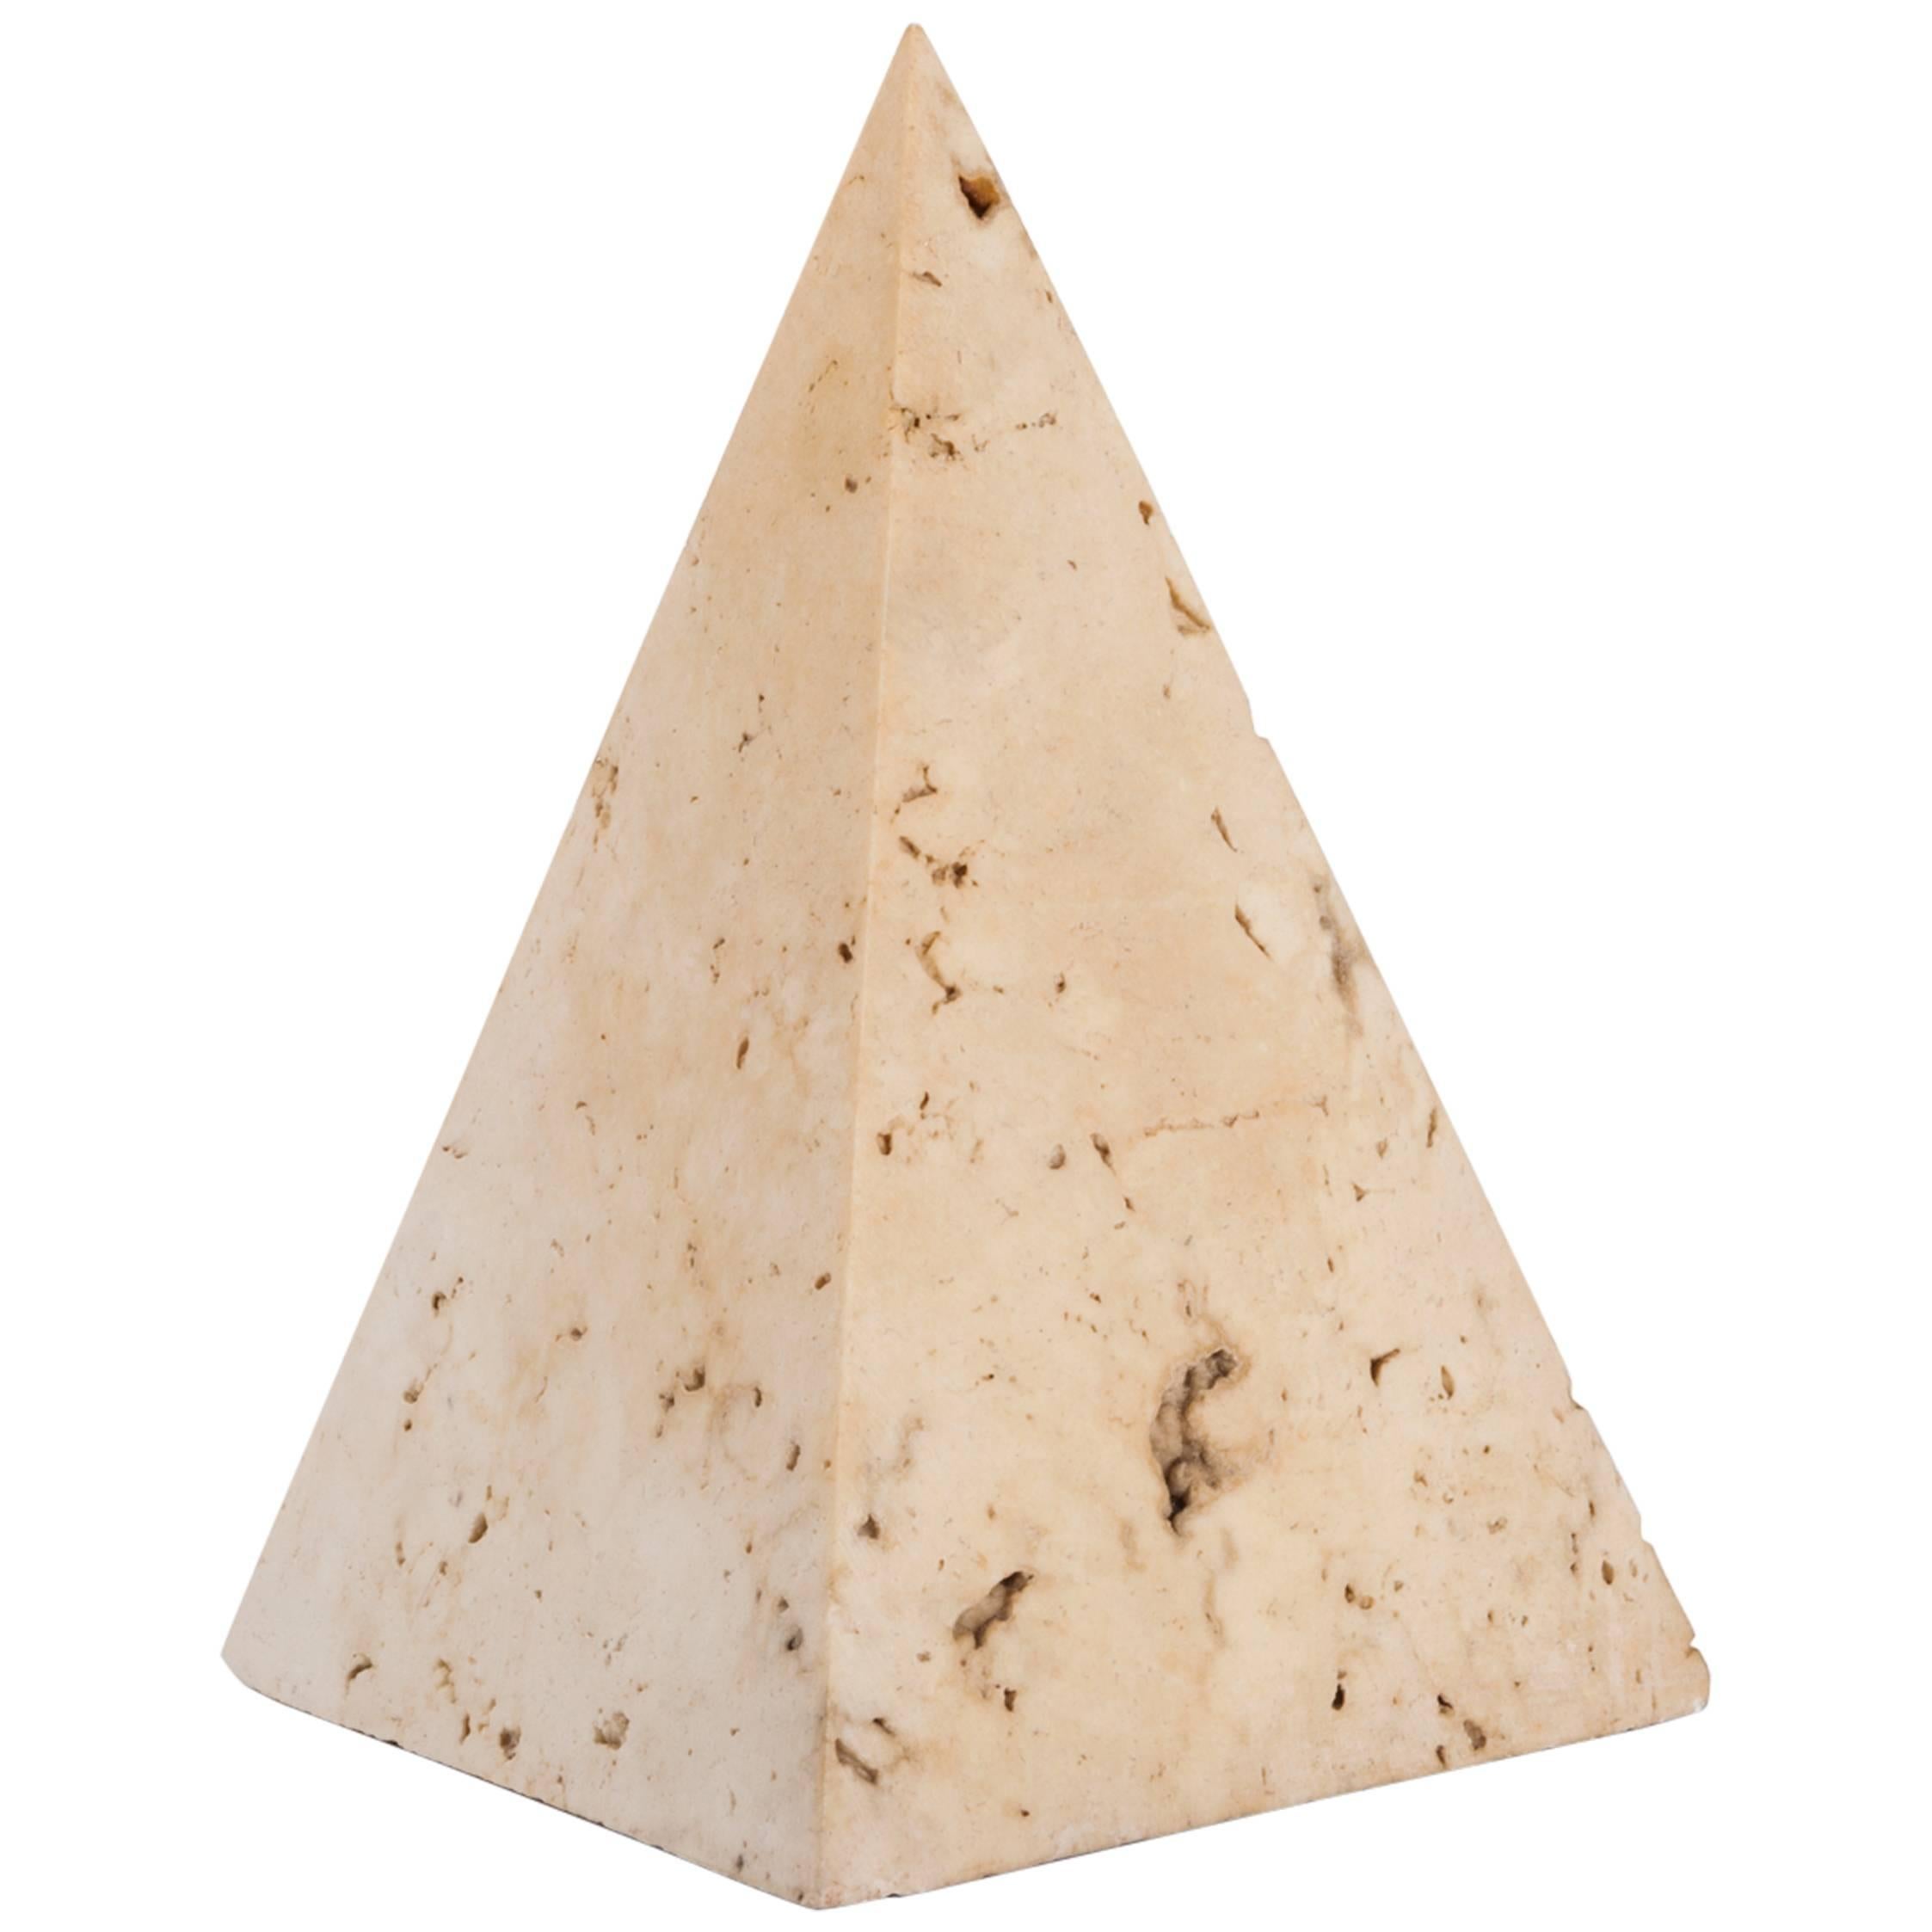 Italian Travertine Stone Pyramid Paperweight, 1970s